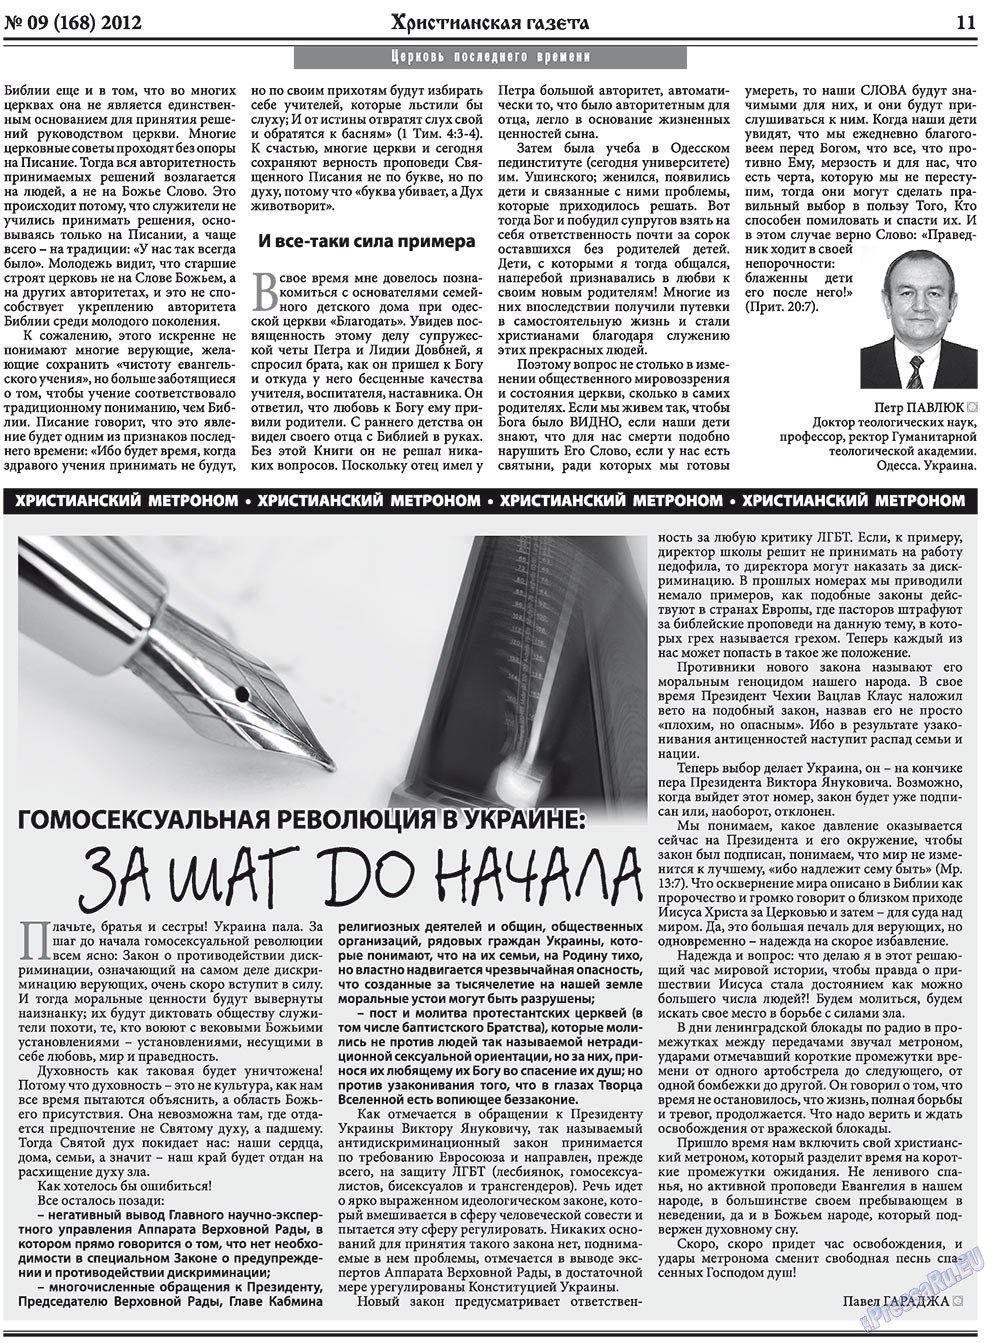 Христианская газета, газета. 2012 №9 стр.11